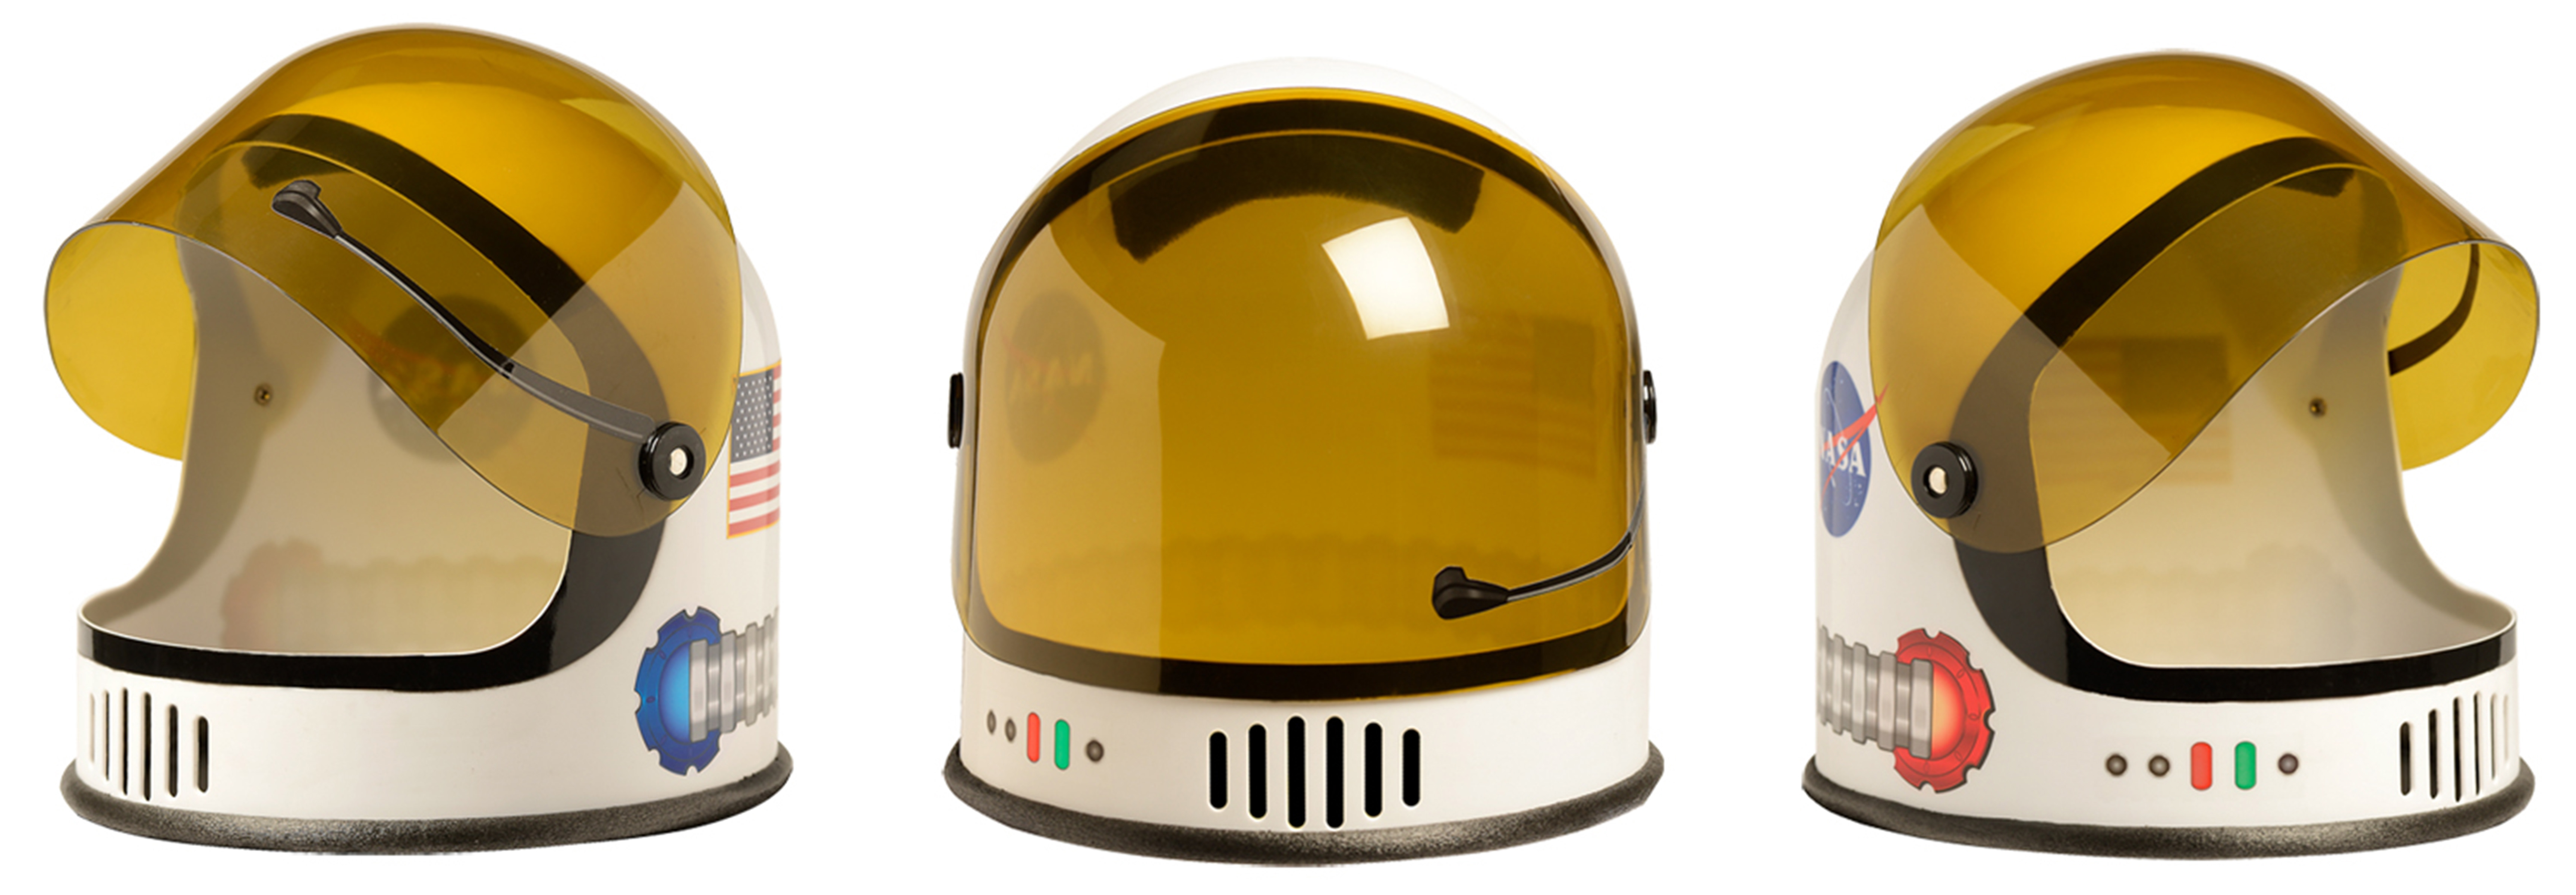 Шлем ко дню космонавтики. Шлем Космонавта. Детский космический шлем. Шлем Космонавта детский. Космический шлем игрушечный.